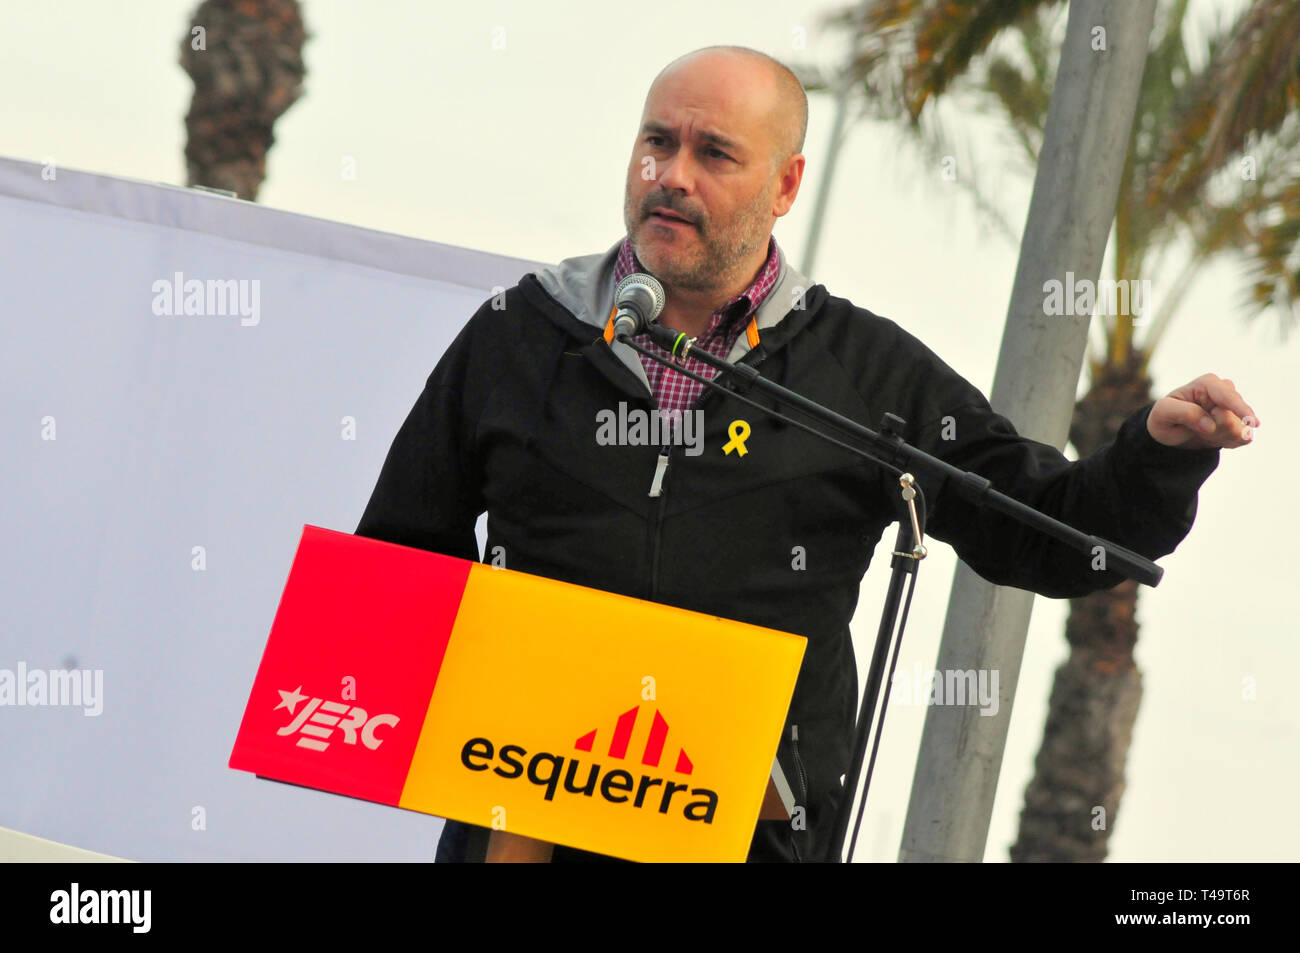 Der Kandidat für die Abgrenzung von Tarragona Jordi Salvador von ERC gesehen Sprechen während die Parlamente der politischen Akt an der Wahlkampf für den nächsten allgemeinen Wahlen in El Vendrell. Stockfoto